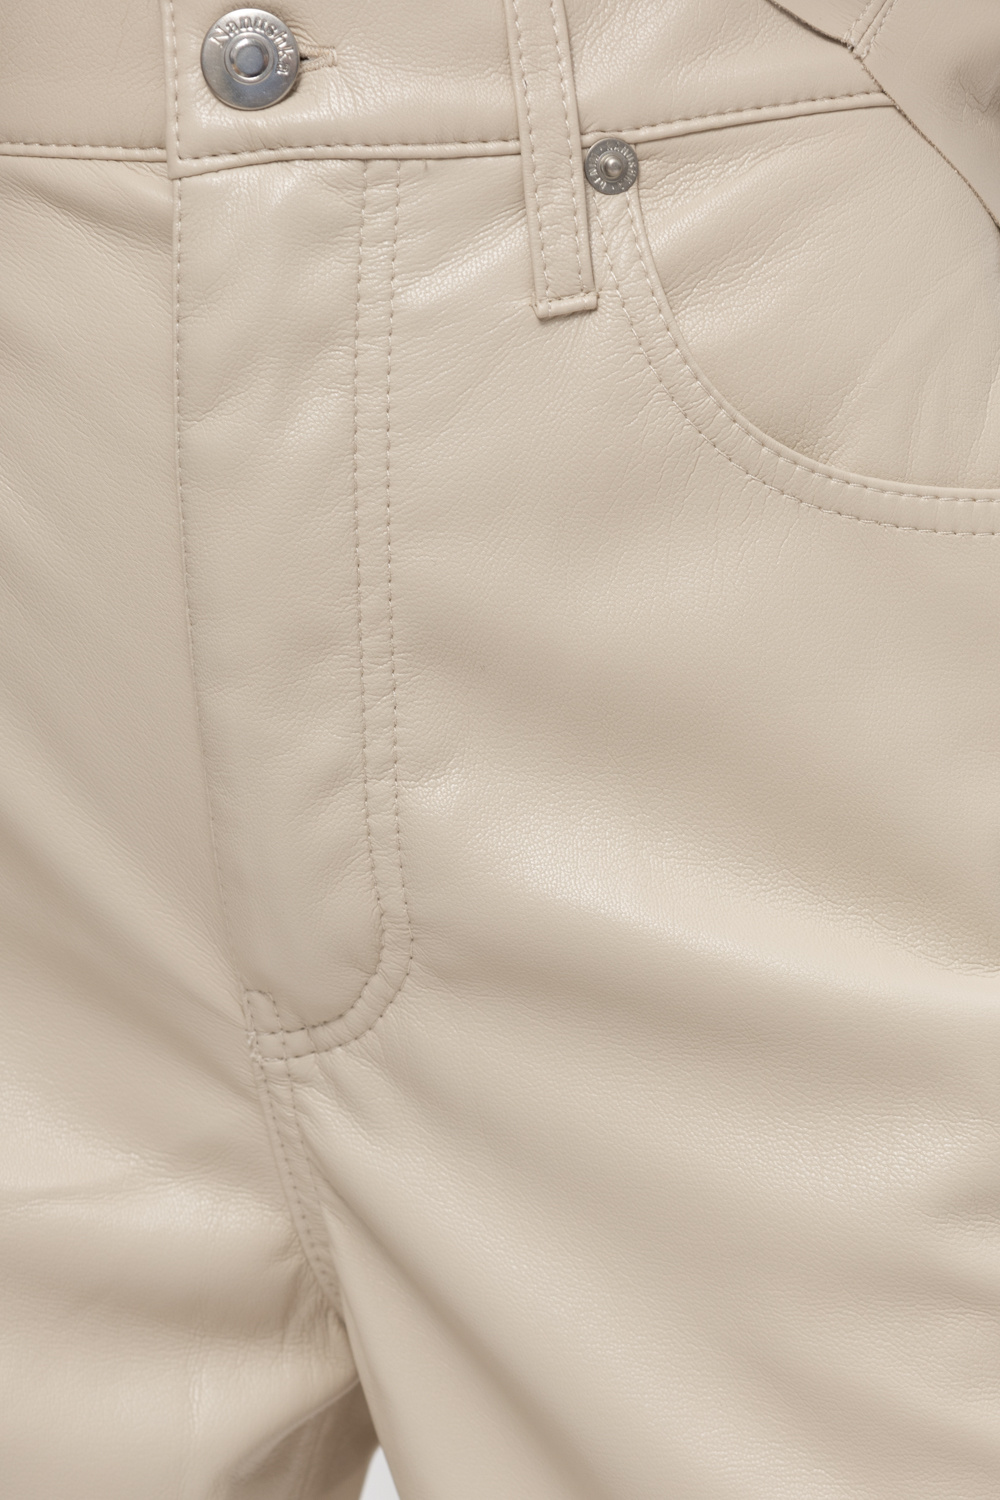 Nanushka ‘Vinni’ vegan leather trousers